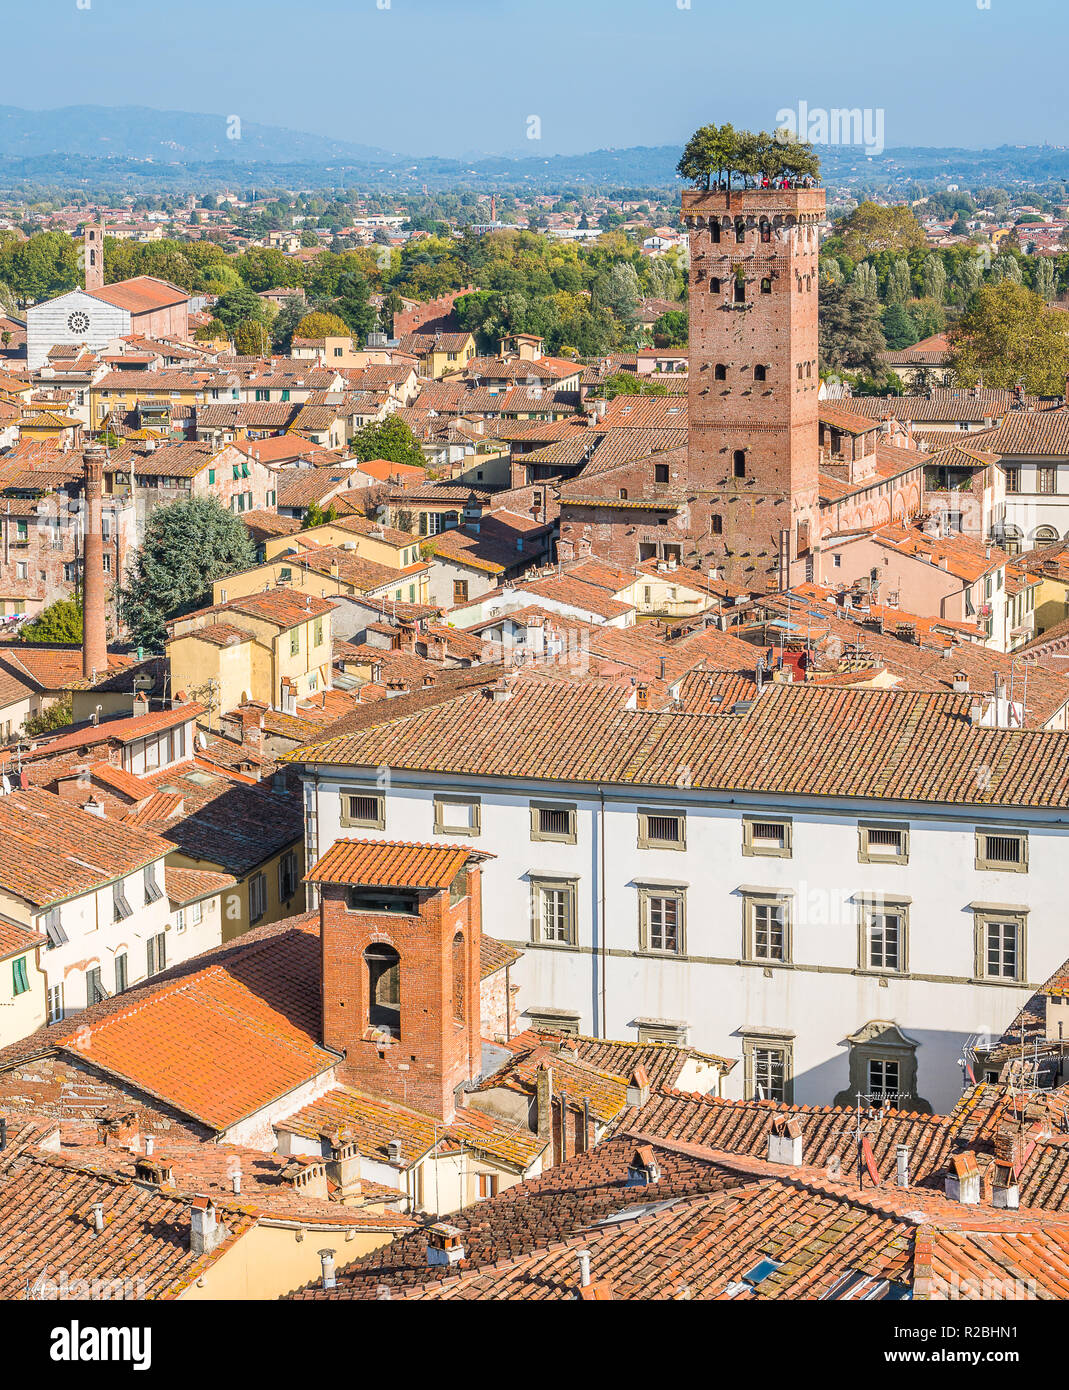 Vue panoramique à Lucca, avec la célèbre Tour Guinigi. La toscane, italie. Banque D'Images